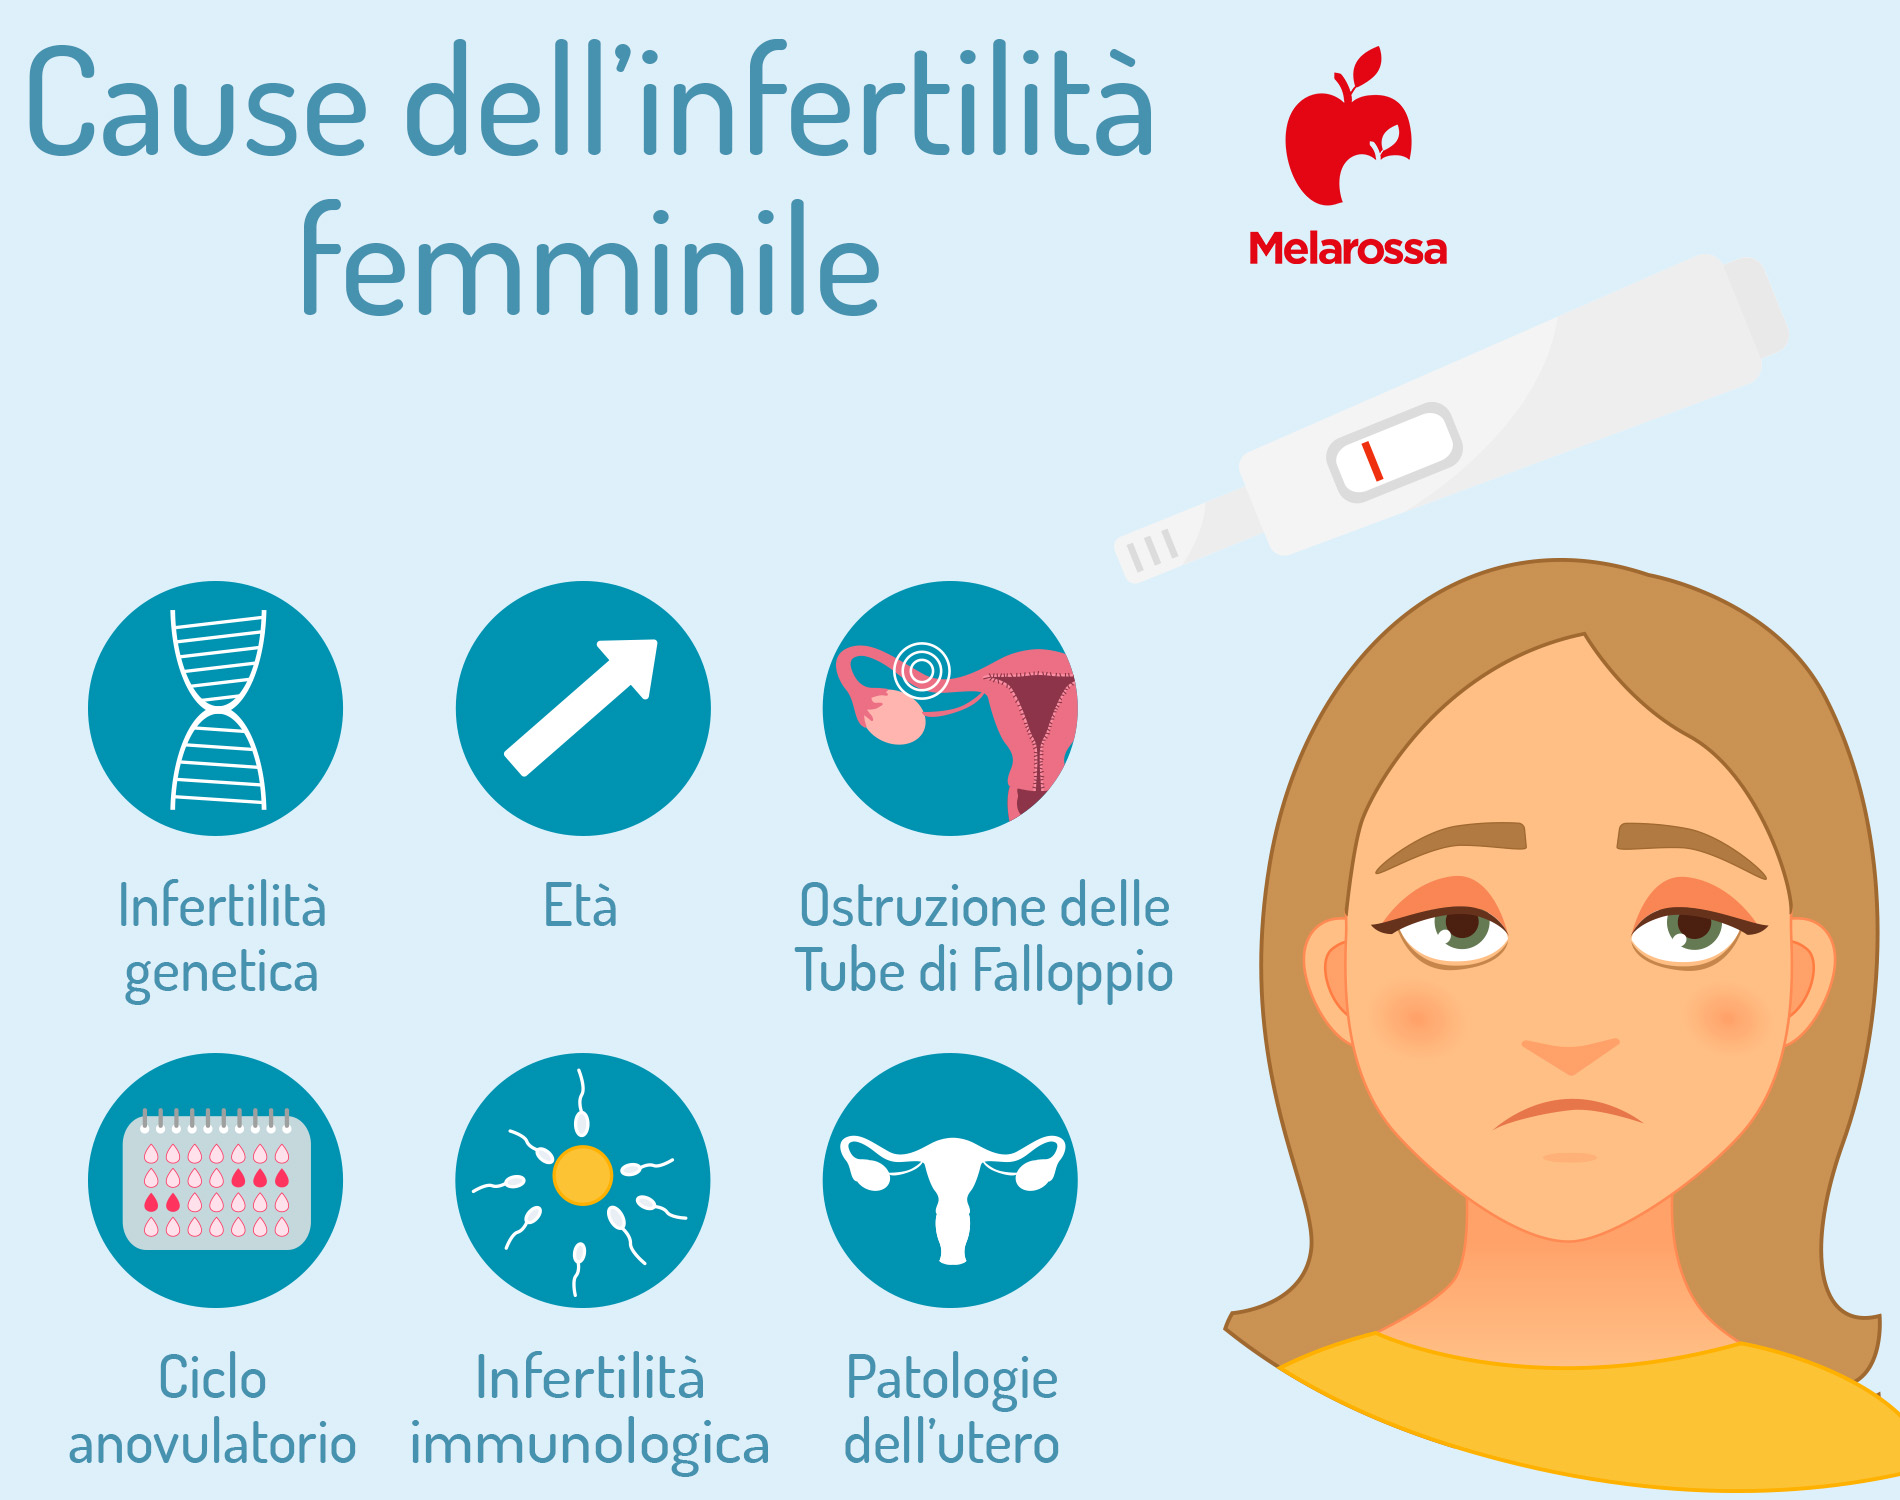 Fertilità: cause dell'infertilità 